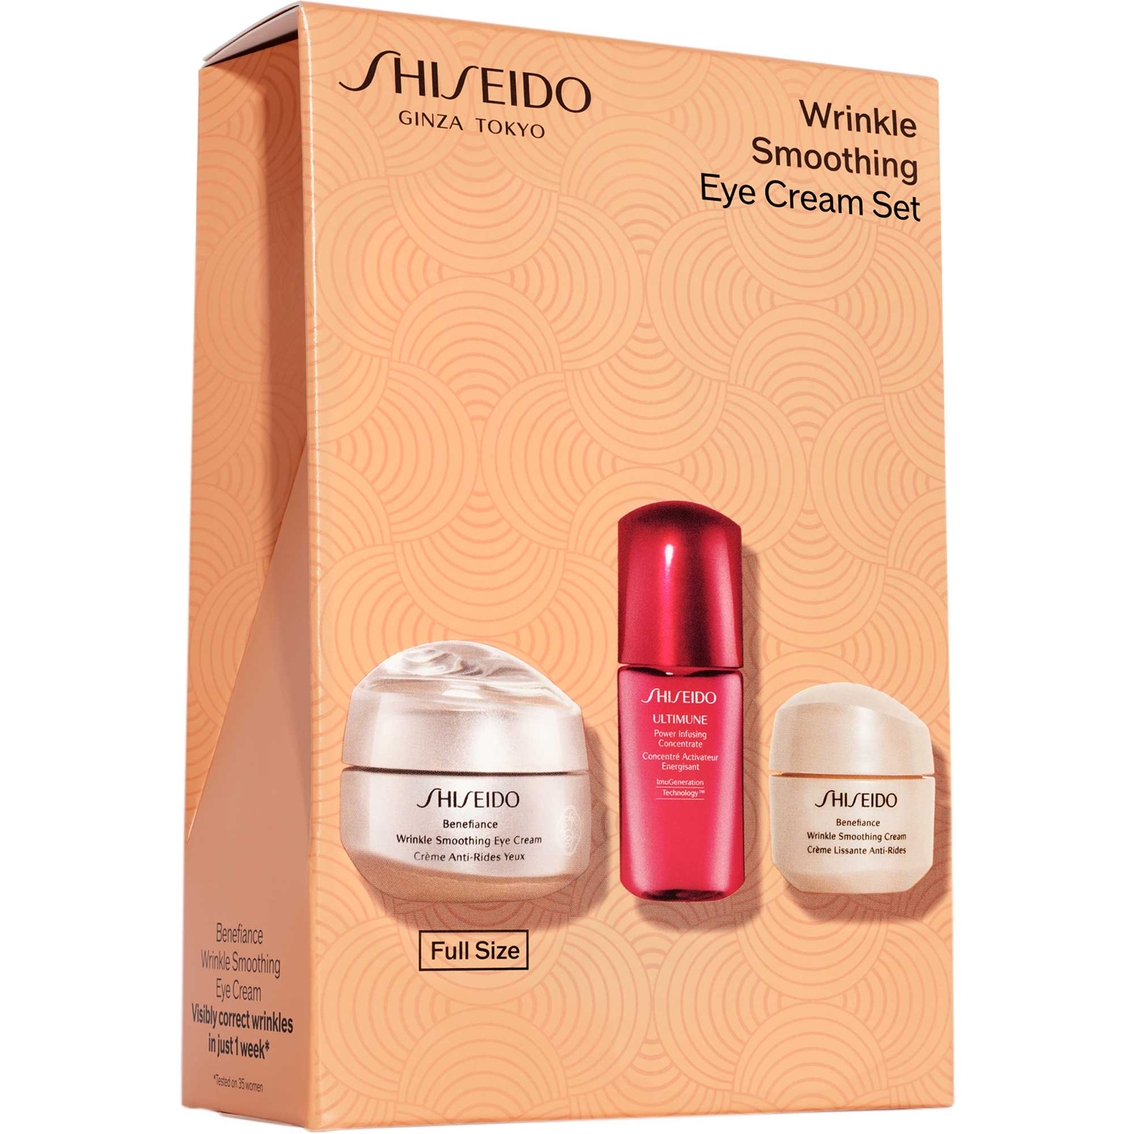 Shiseido Wrinkle Smoothing Eye Cream 3 pc. Set - Image 2 of 3